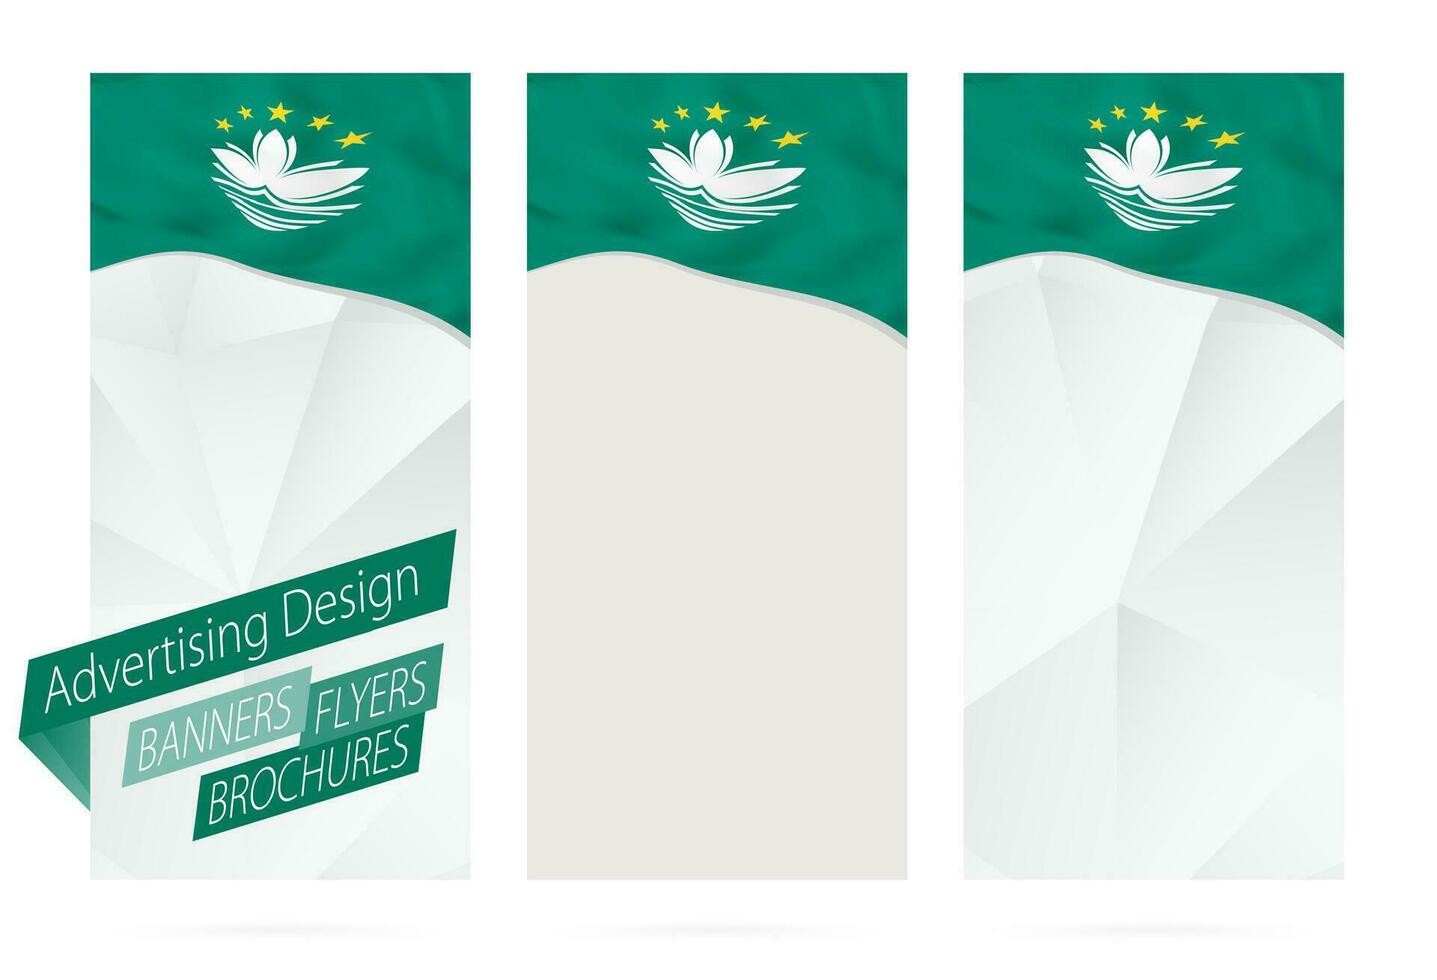 Projeto do bandeiras, panfletos, brochuras com bandeira do macau. vetor